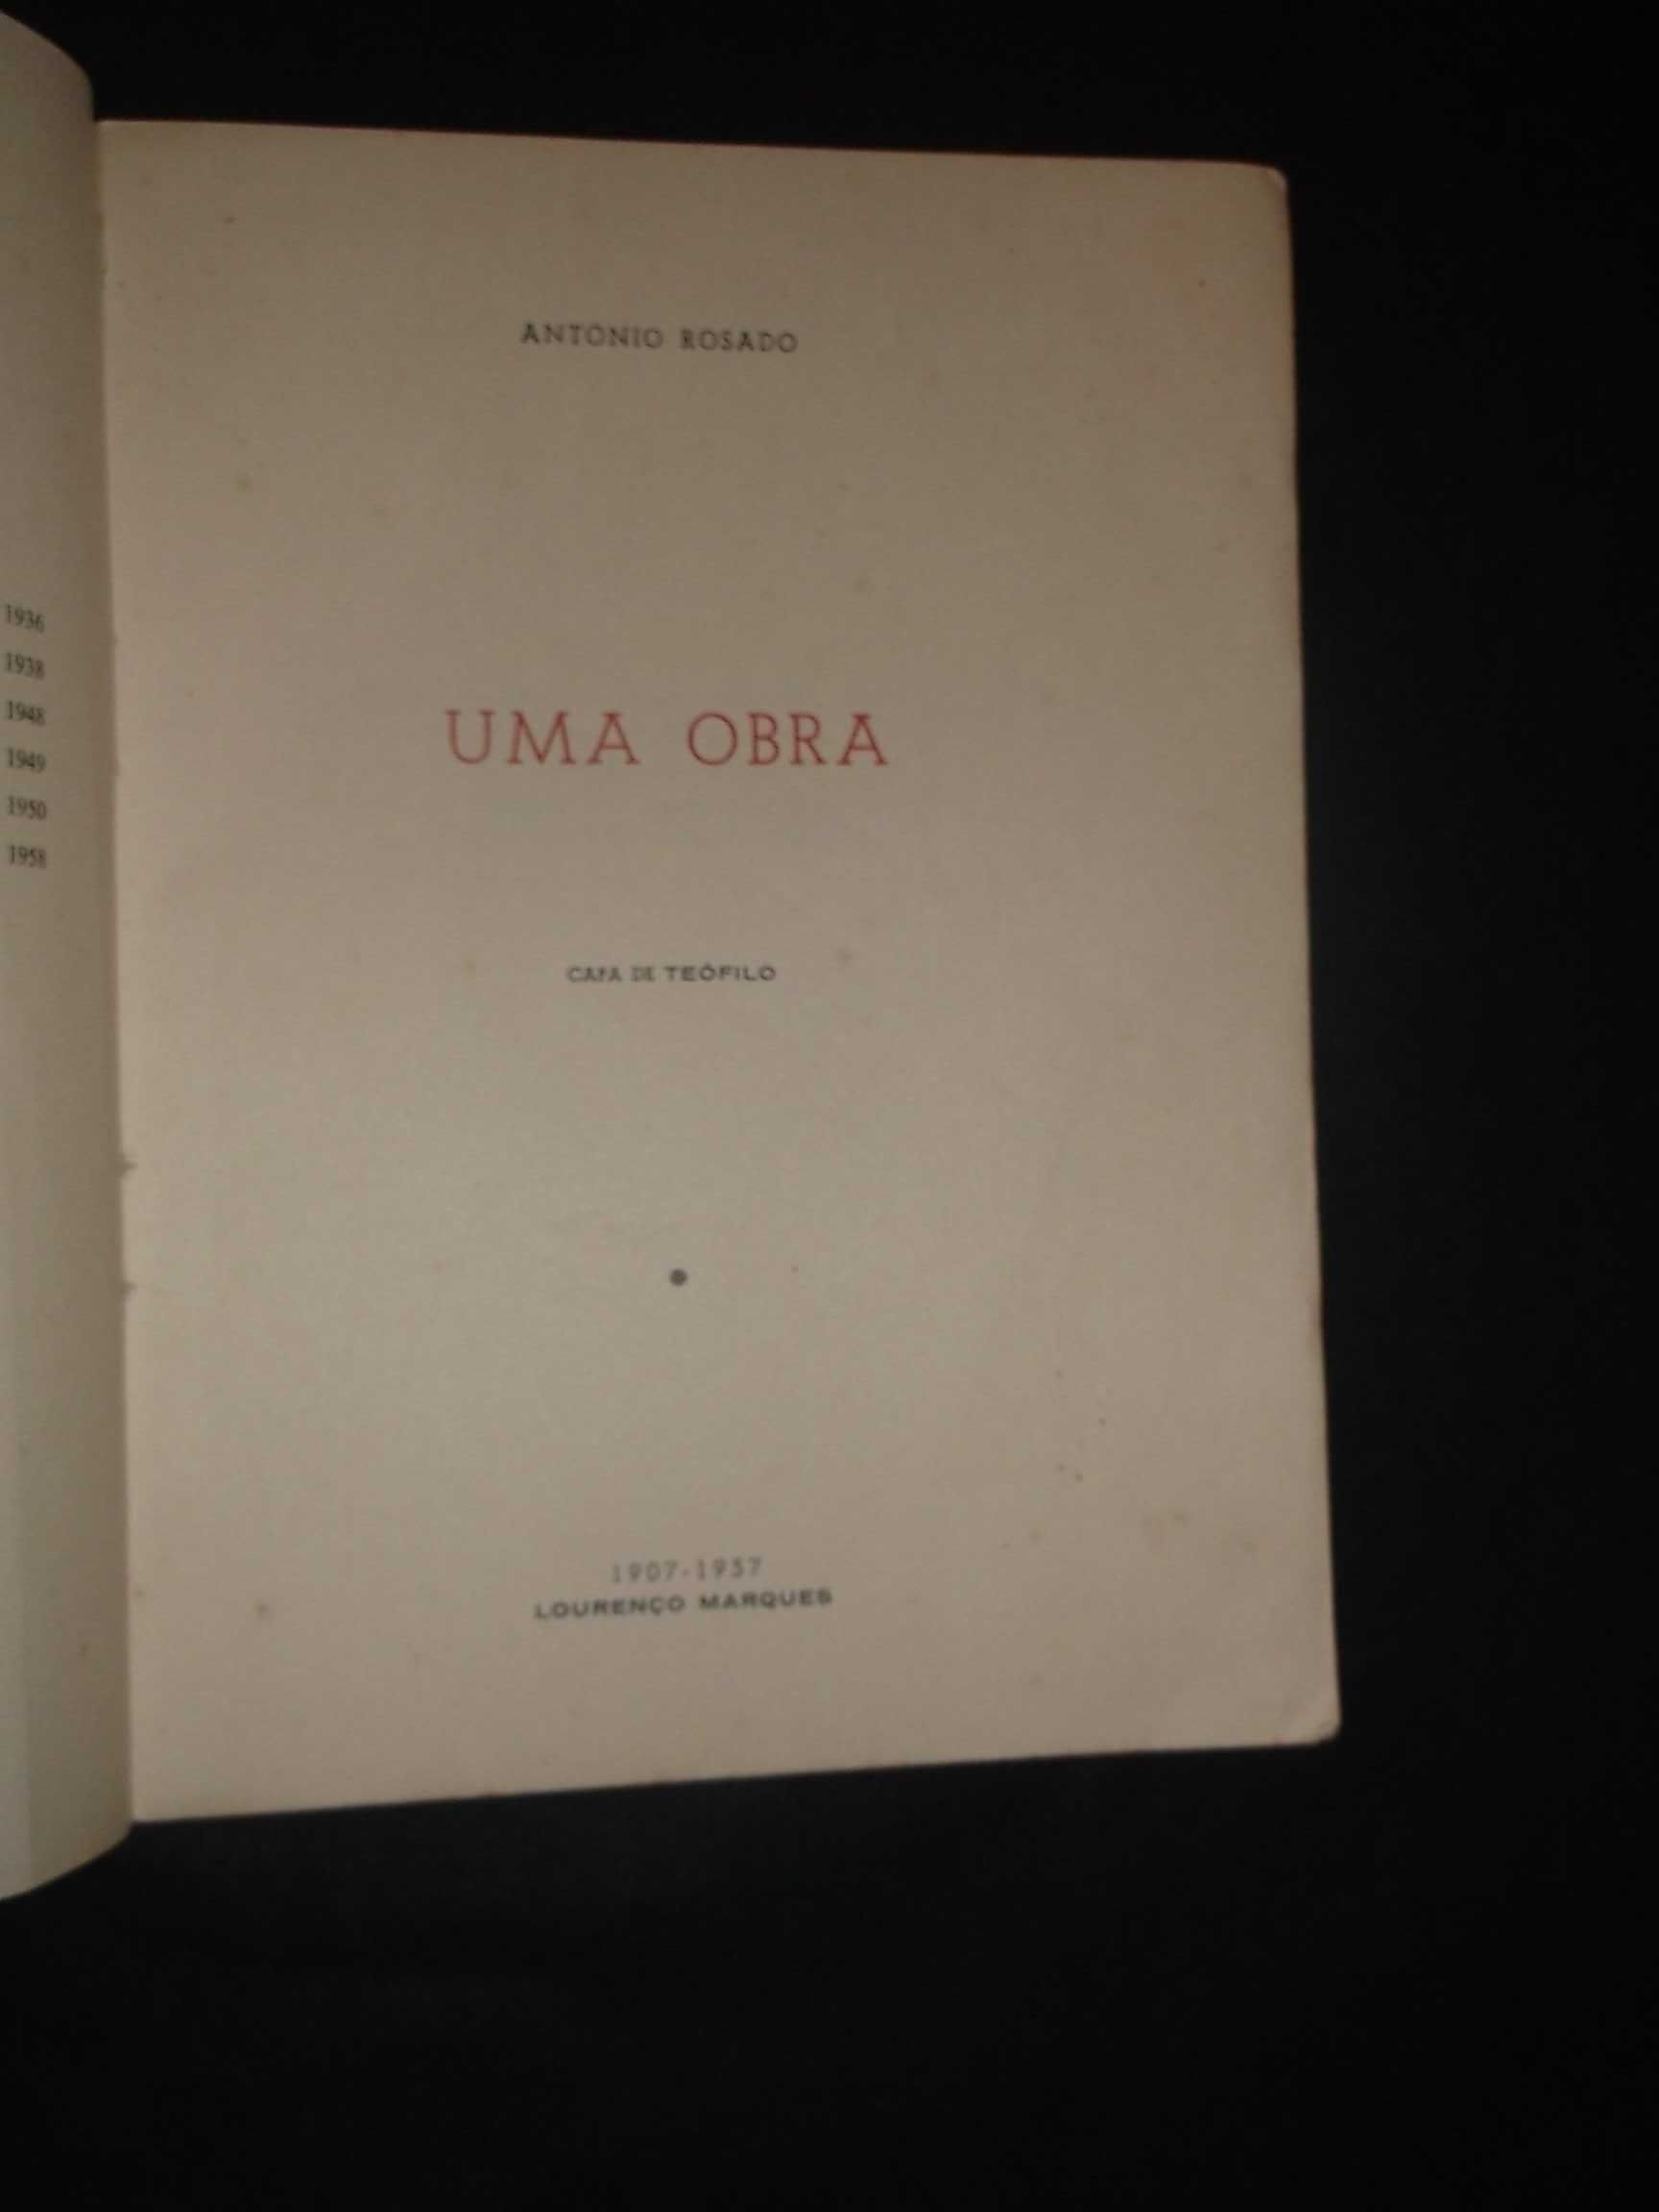 António Rosado;Uma Obra-1907/1957;Edição de Autor,Lourenço Marques